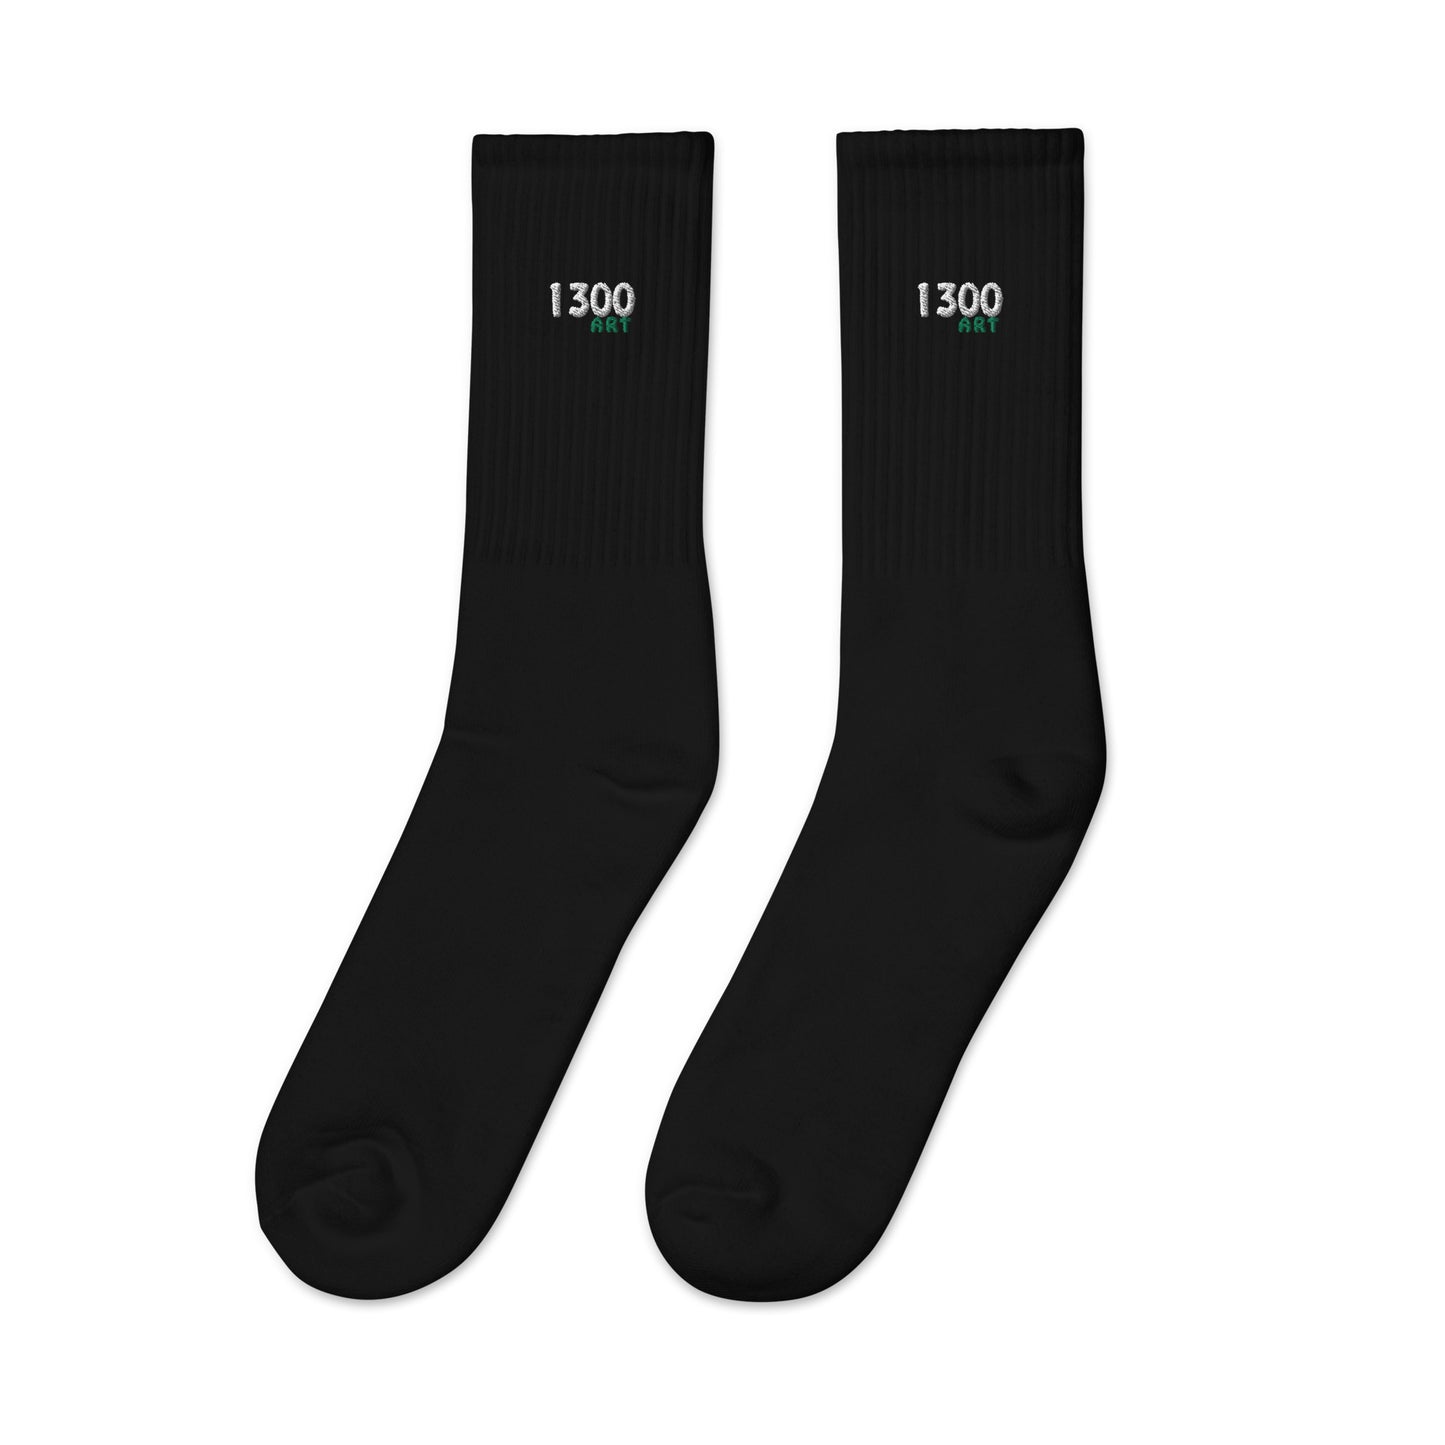 "1300 ART" Embroidered socks